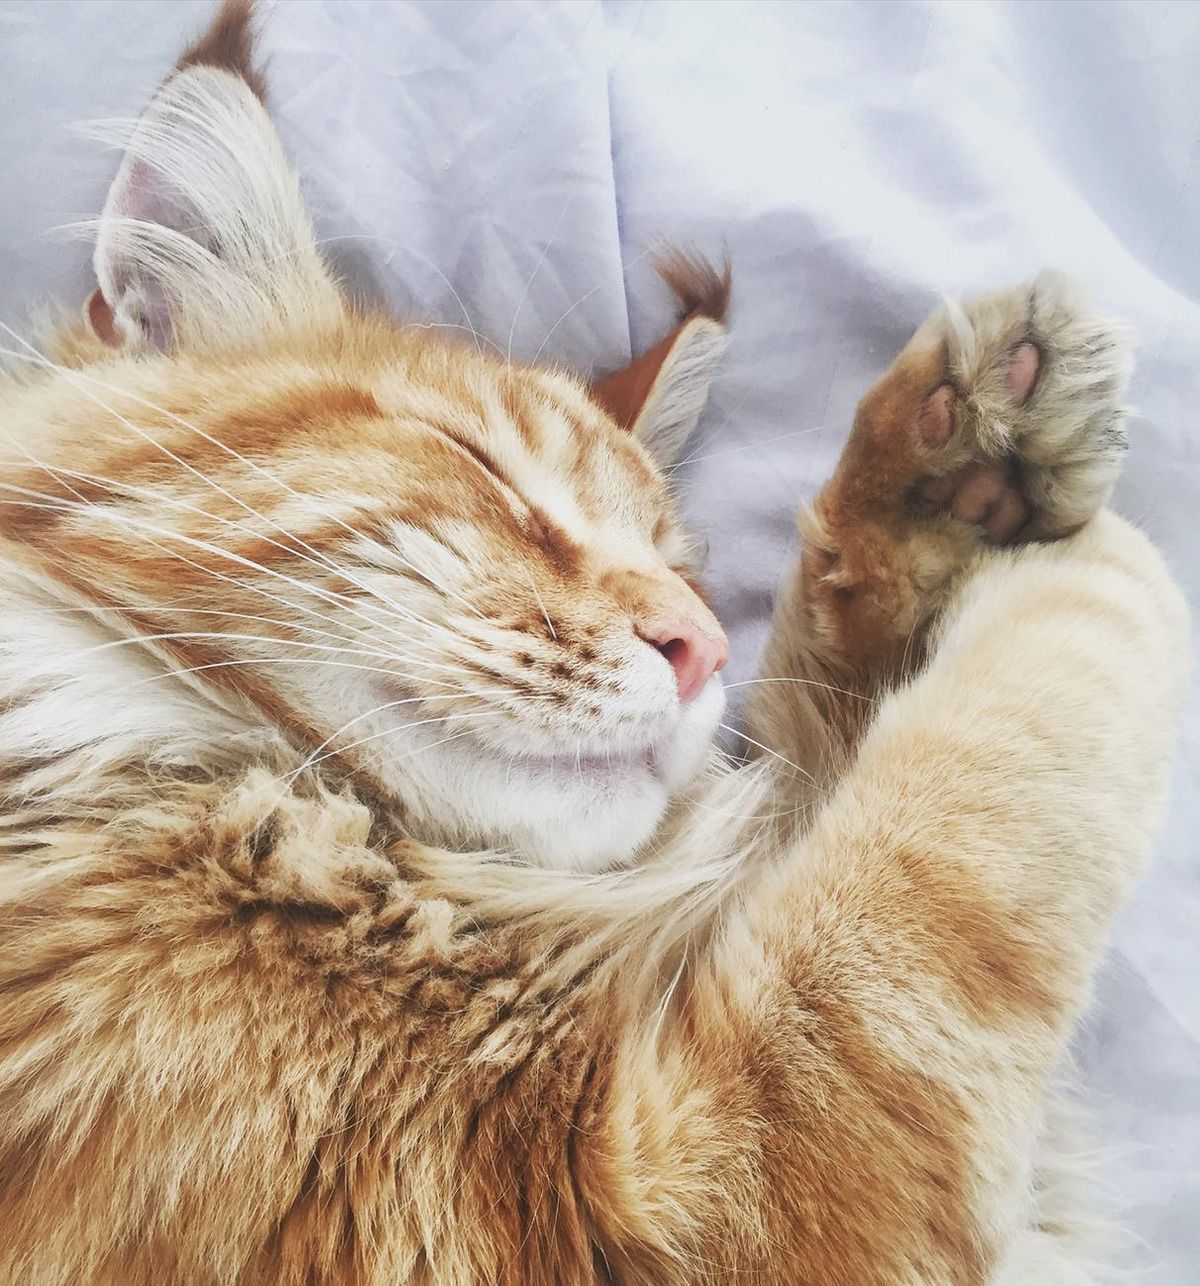 Чому коти люблять спати на ногах людини. Всі власники вусатих-смугастих знають, що кішки обожнюють спати поруч з господарем, а ще краще — на ньому. Чому вони так роблять?